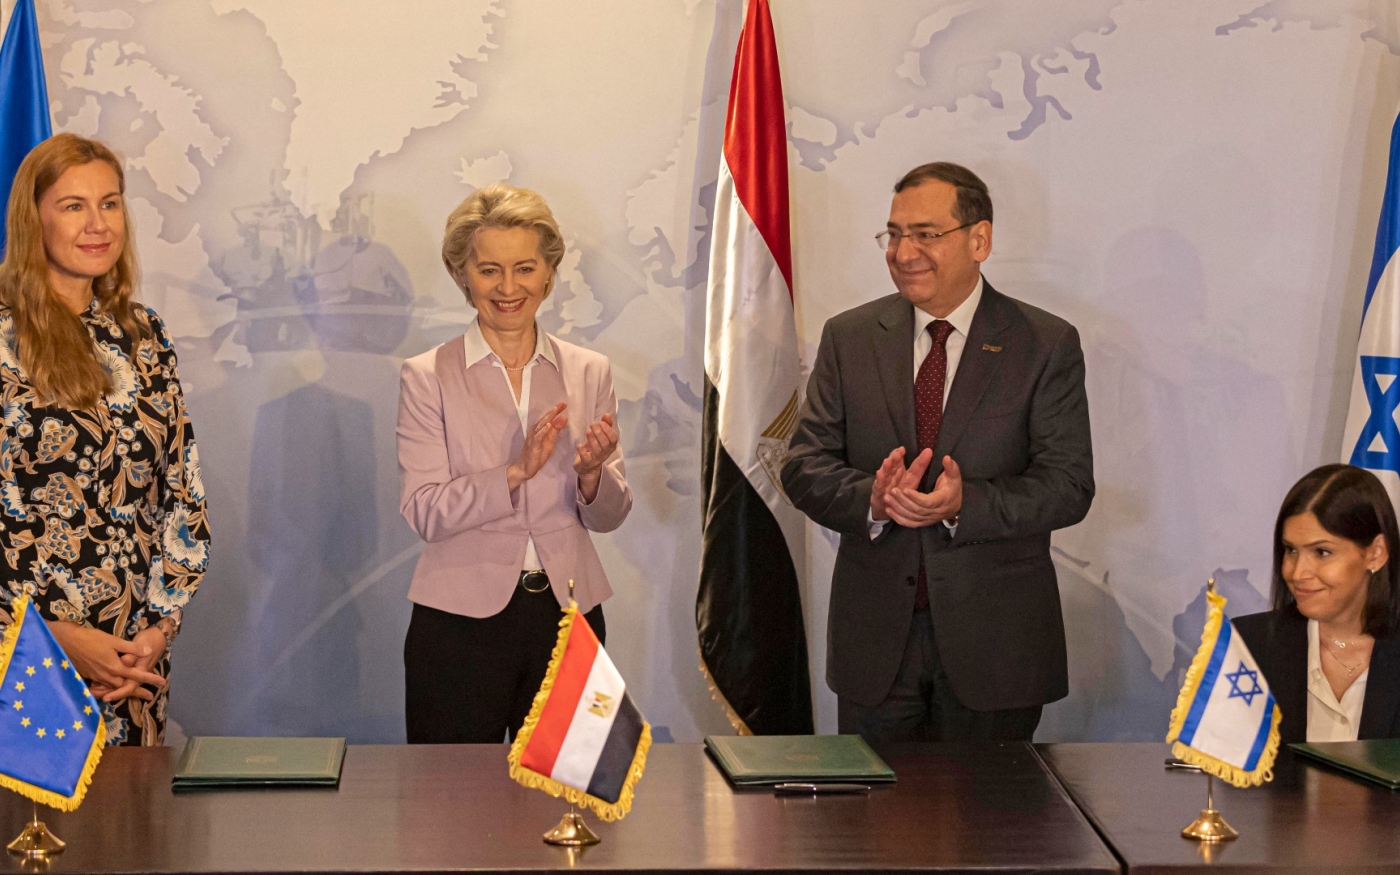 Les représentants de l’Union européenne, de l’Égypte et d’Israël signent un accord de gaz naturel tripartite au Caire, le 15 juin 2022 (AFP)